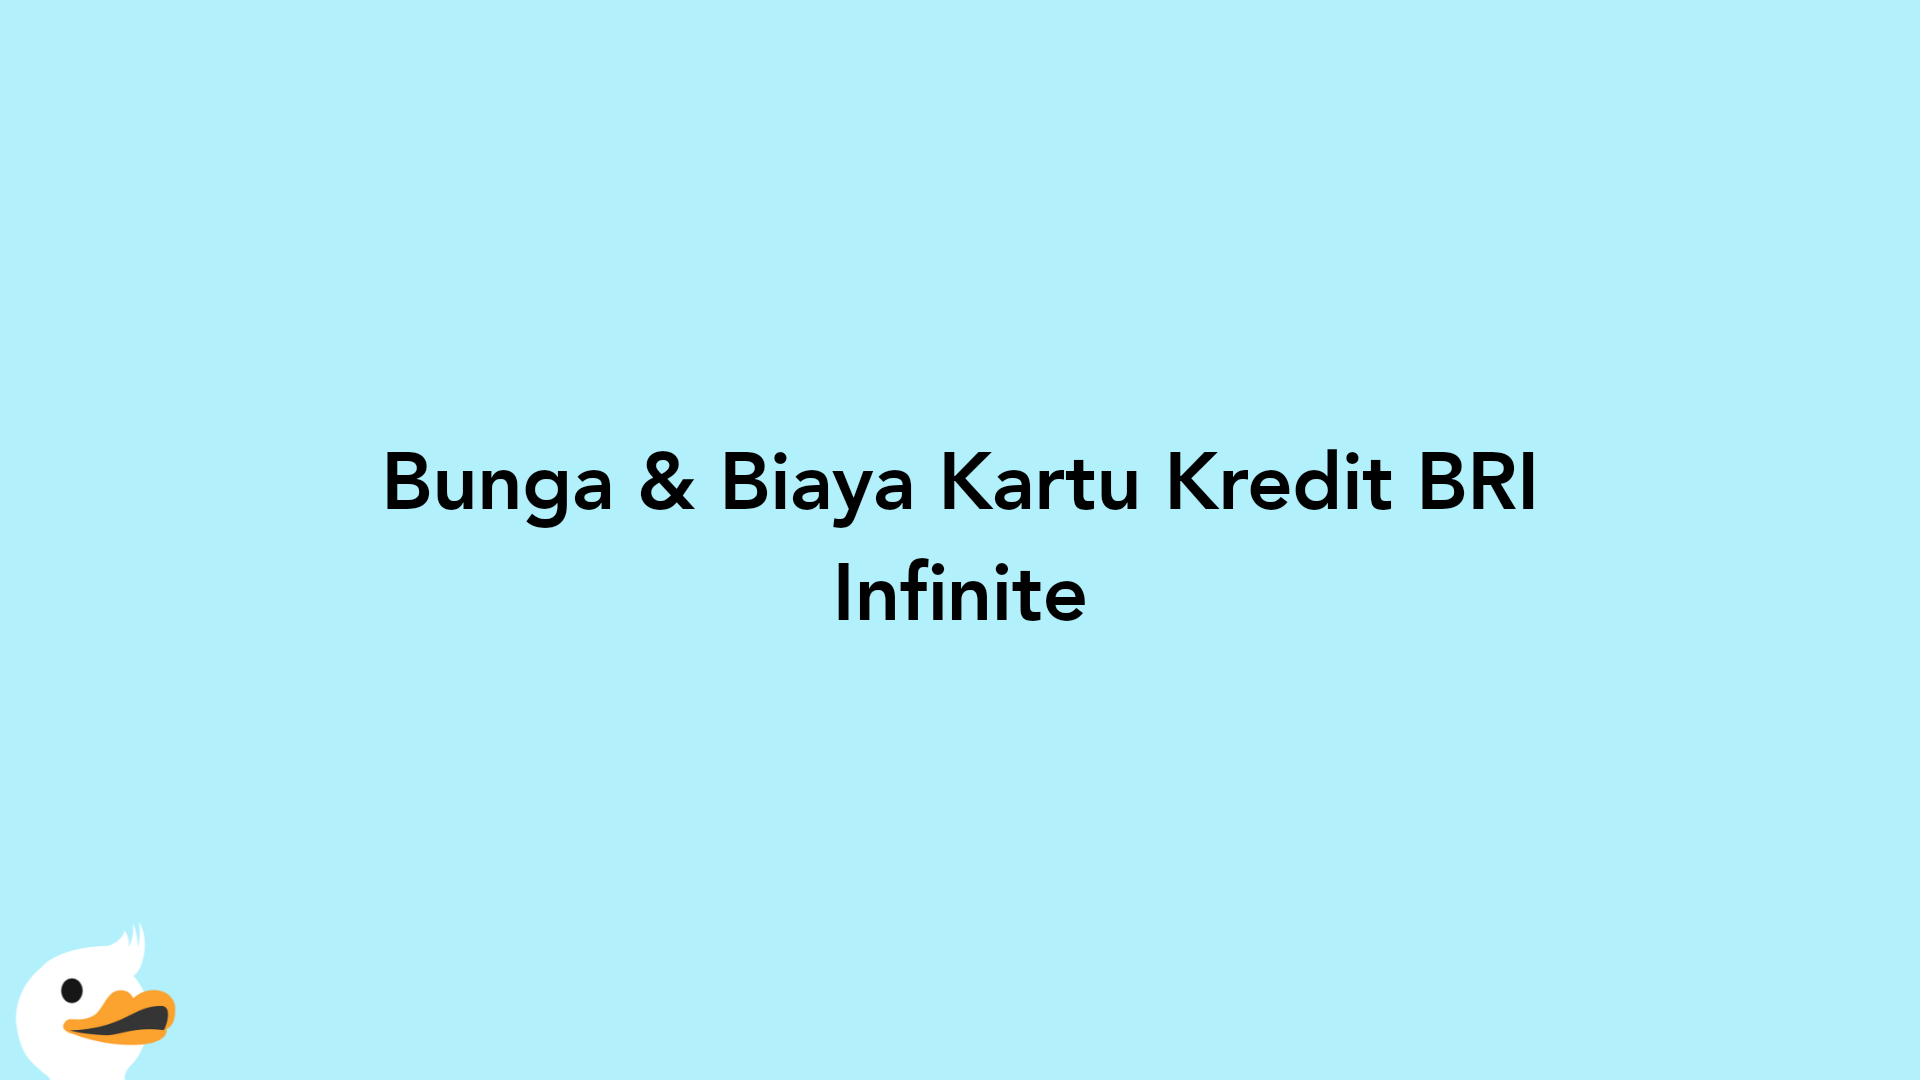 Bunga & Biaya Kartu Kredit BRI Infinite